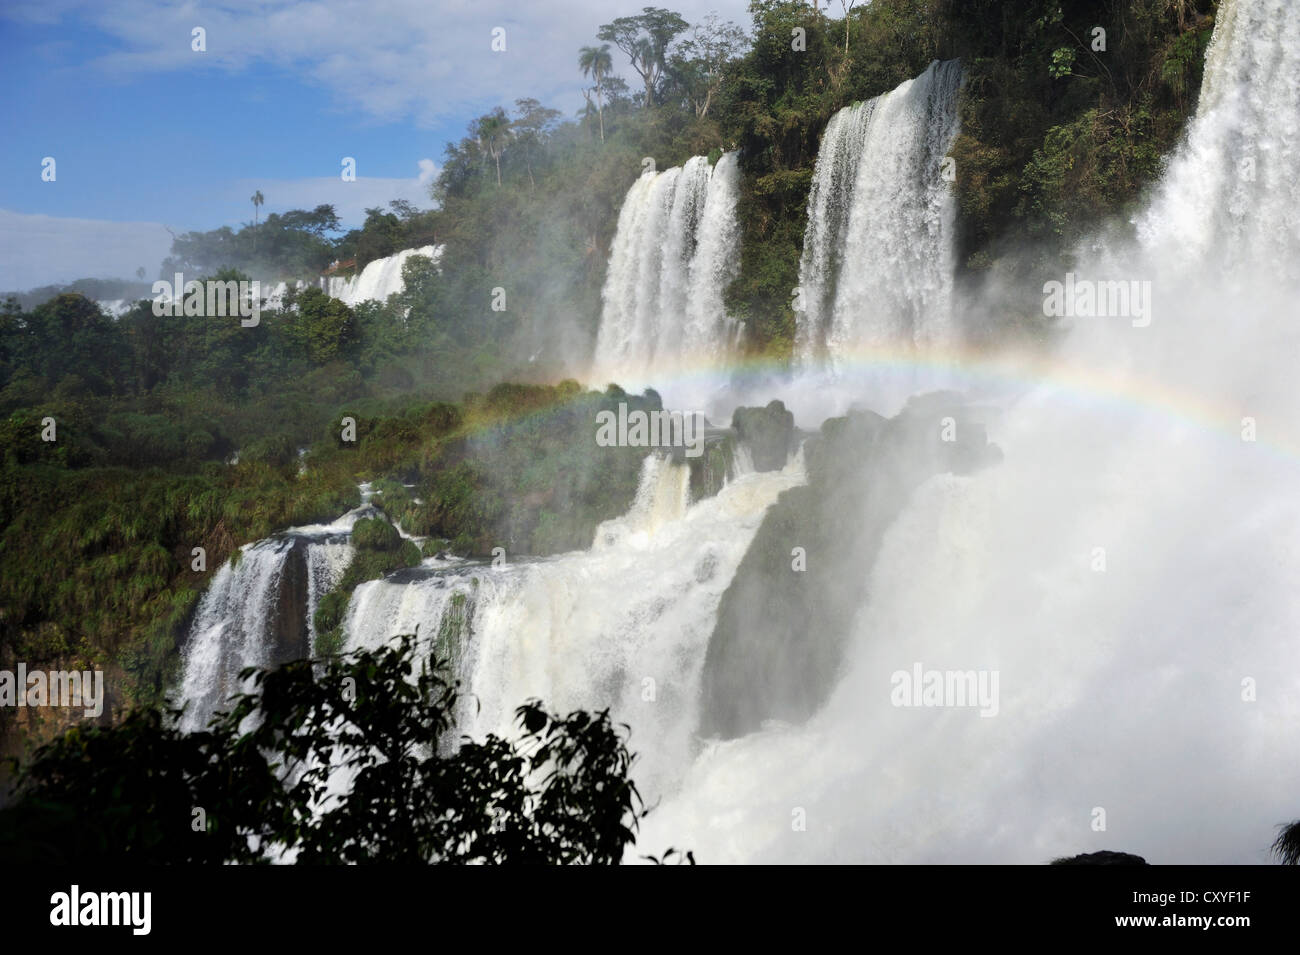 Iguazu oder Iguacufälle, UNESCO-Weltkulturerbe mit Regenbogen, von Brasilien und Argentinien, Landschaft, von der argentinischen Seite Stockfoto